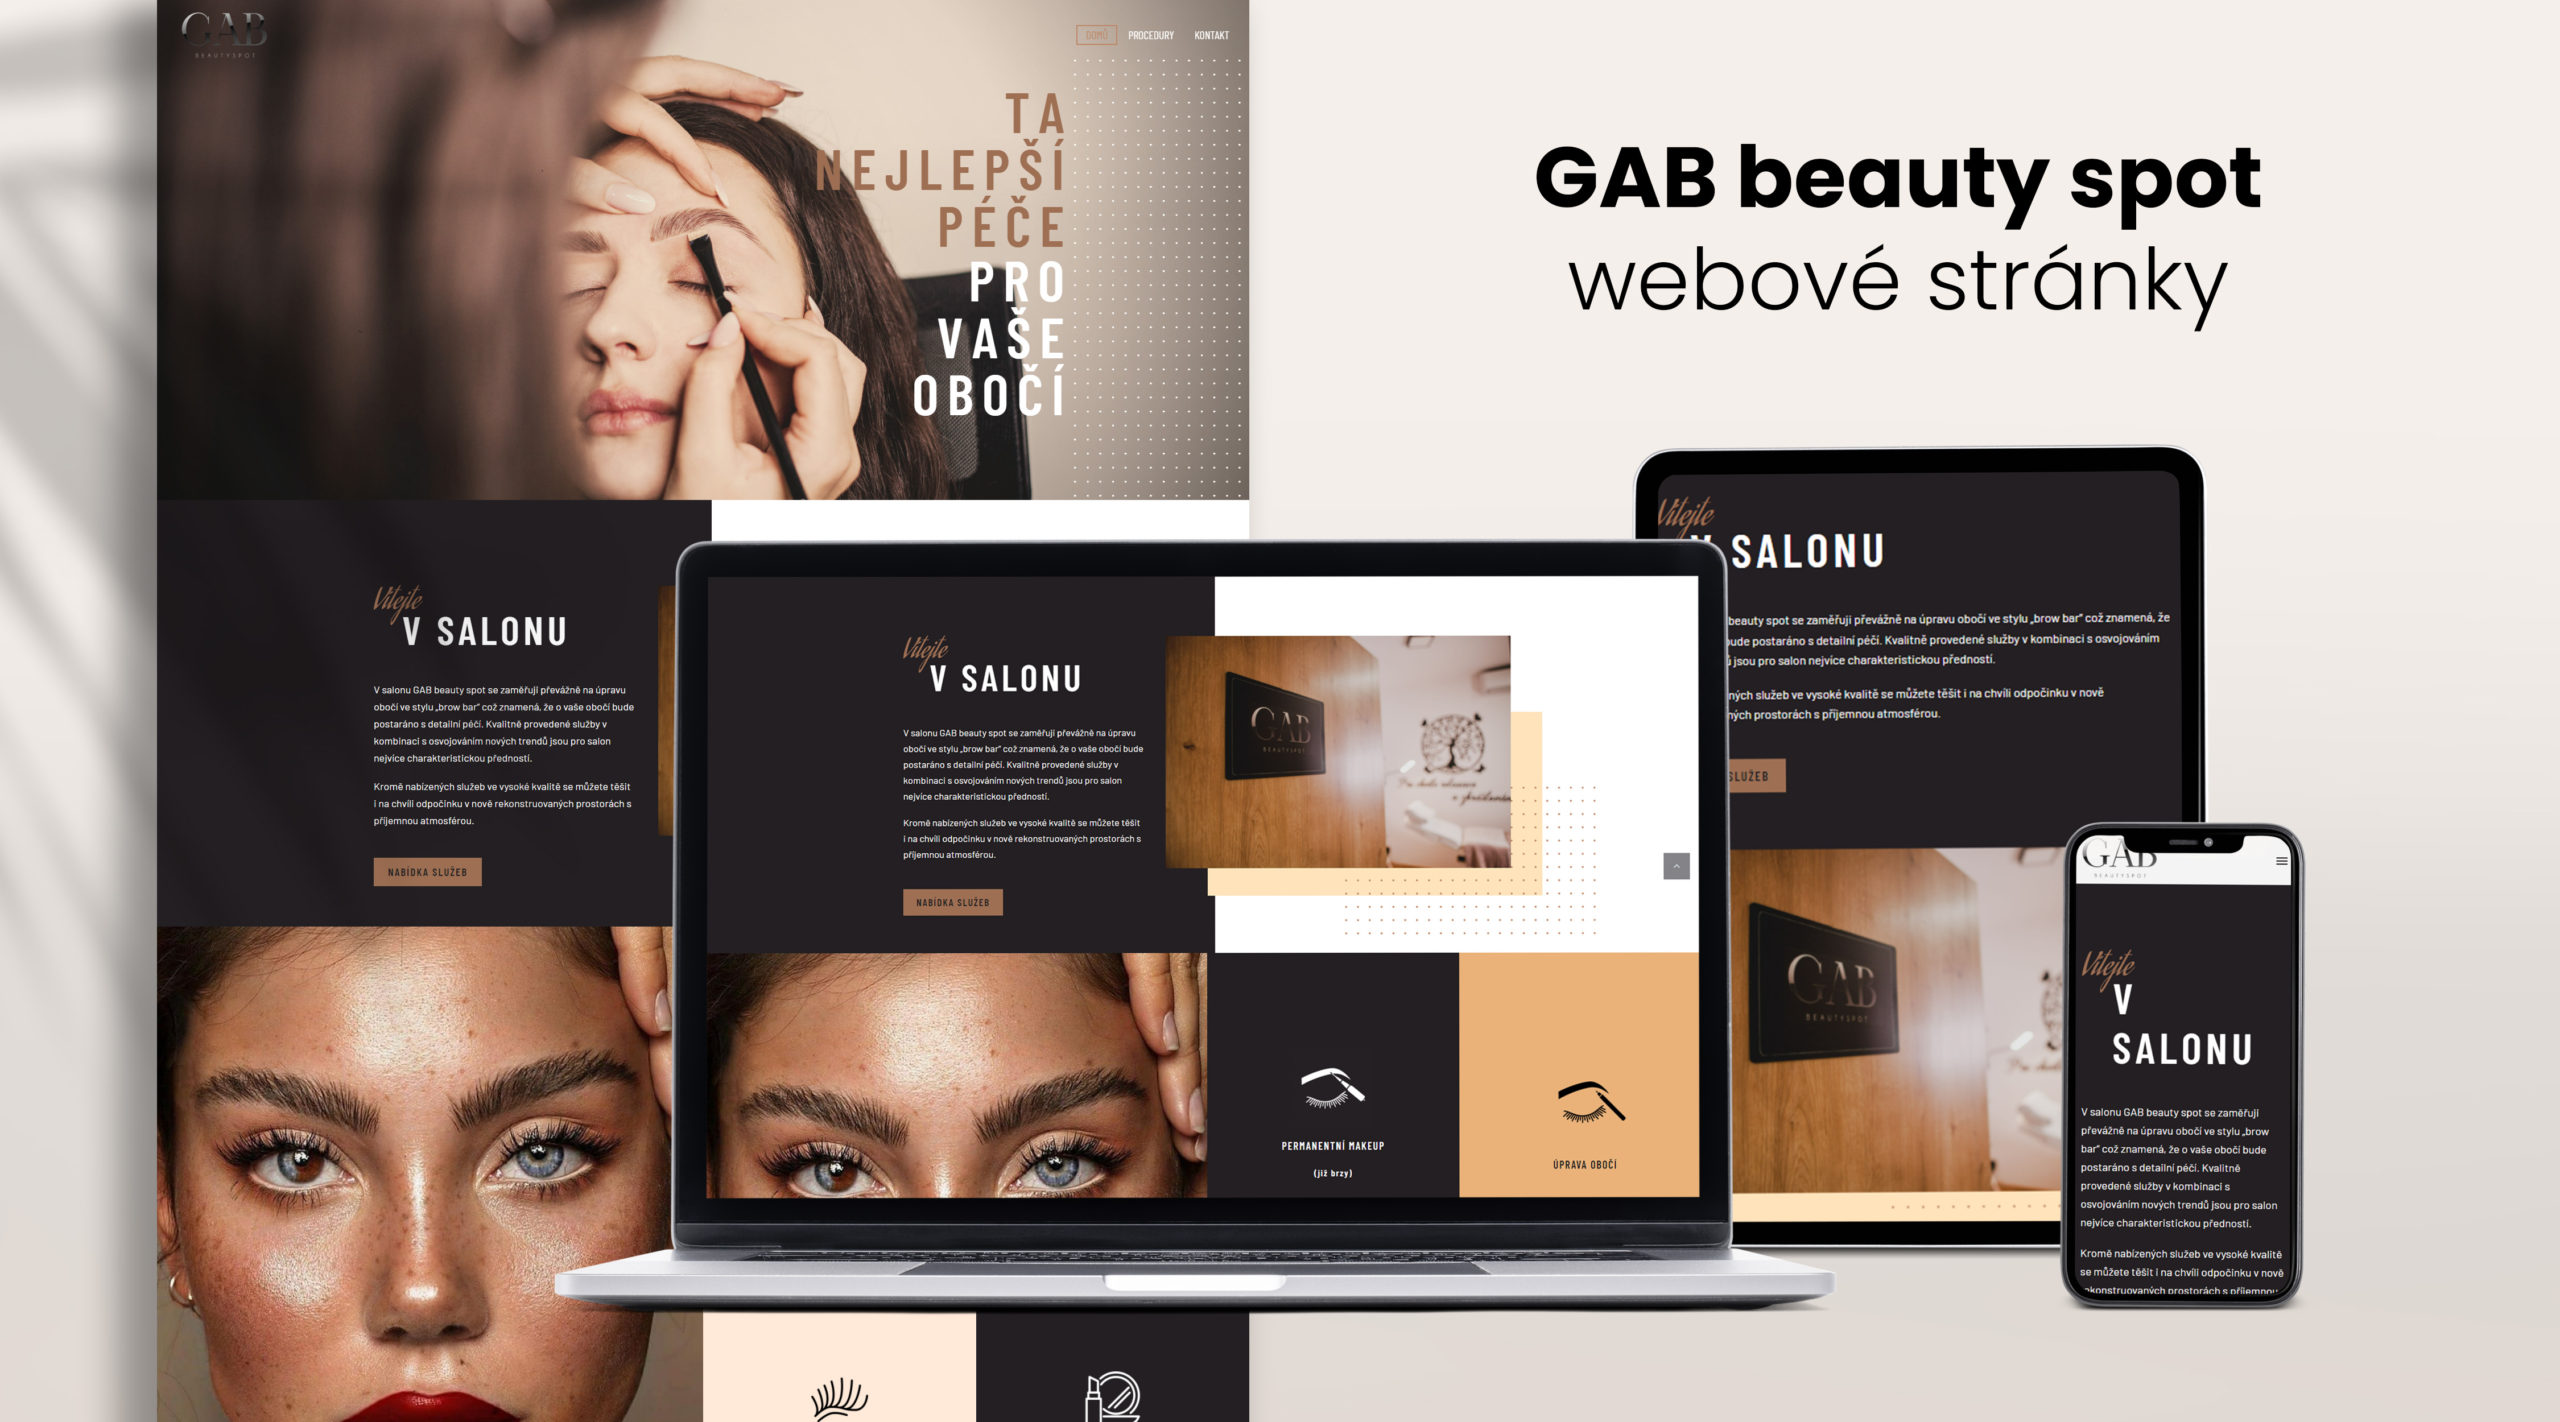 Webové stránky salonu GAB beauty spot